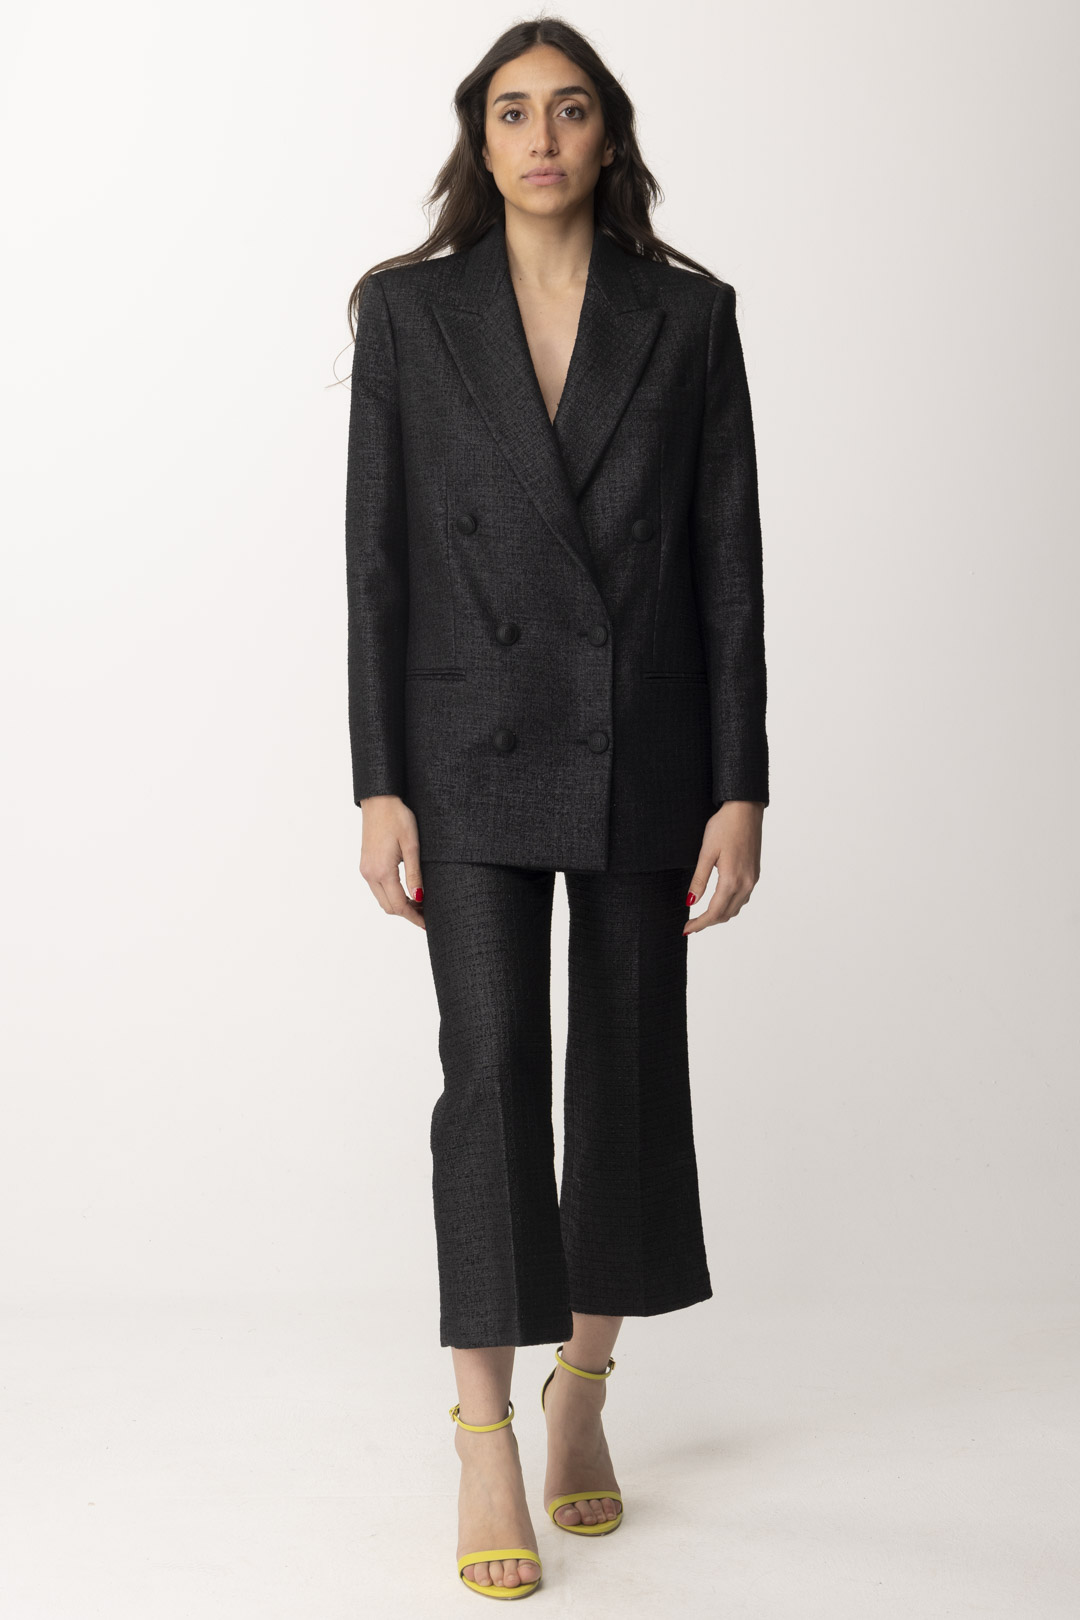 Podgląd: Elisabetta Franchi Krótkie spodnie z laminowanego tweedu Nero